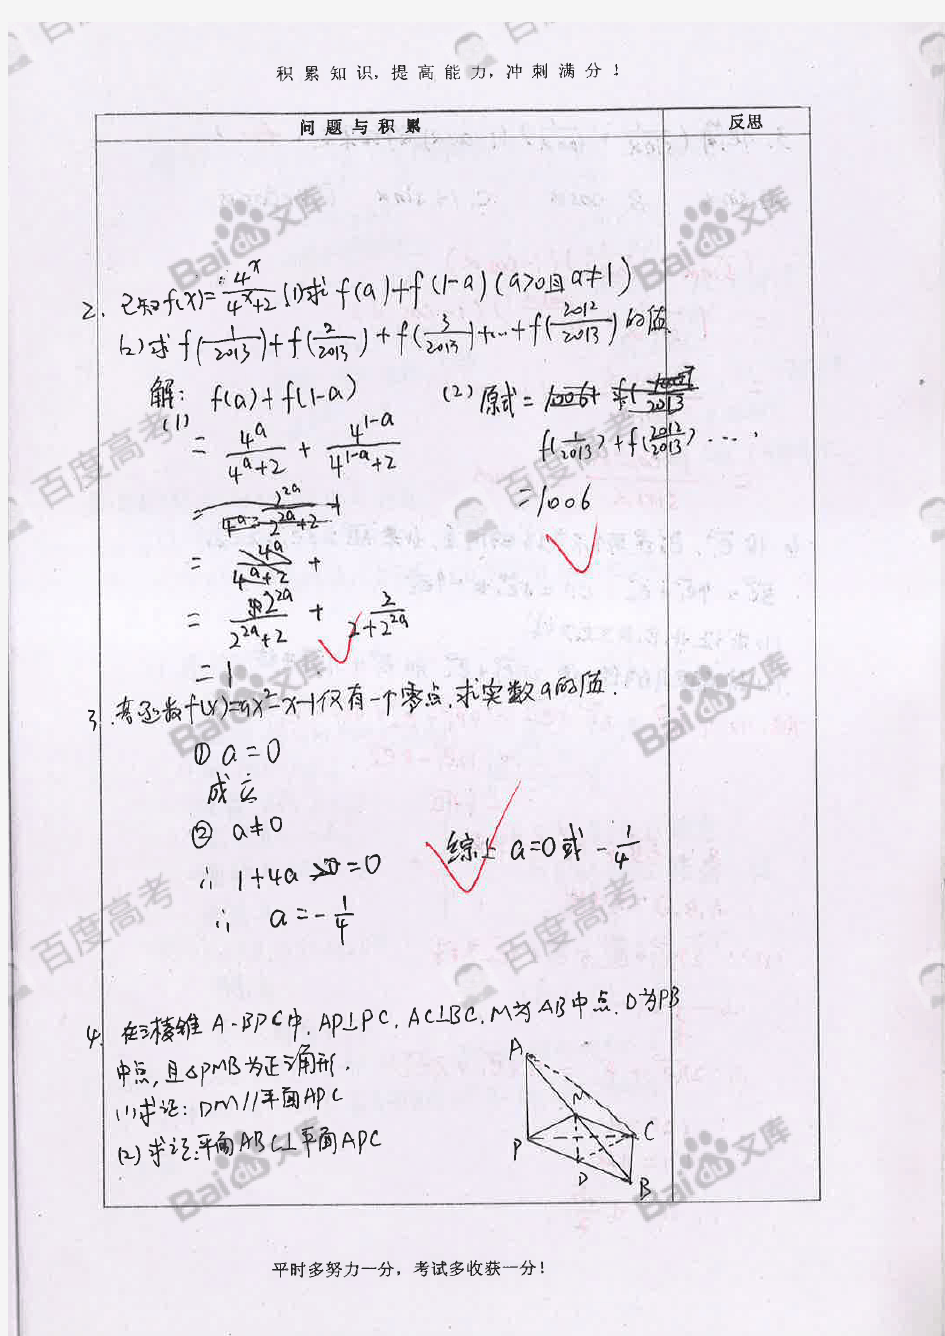 4高中数学错题笔记_Part4_河北衡水中学文科学霸_2016高考状元笔记